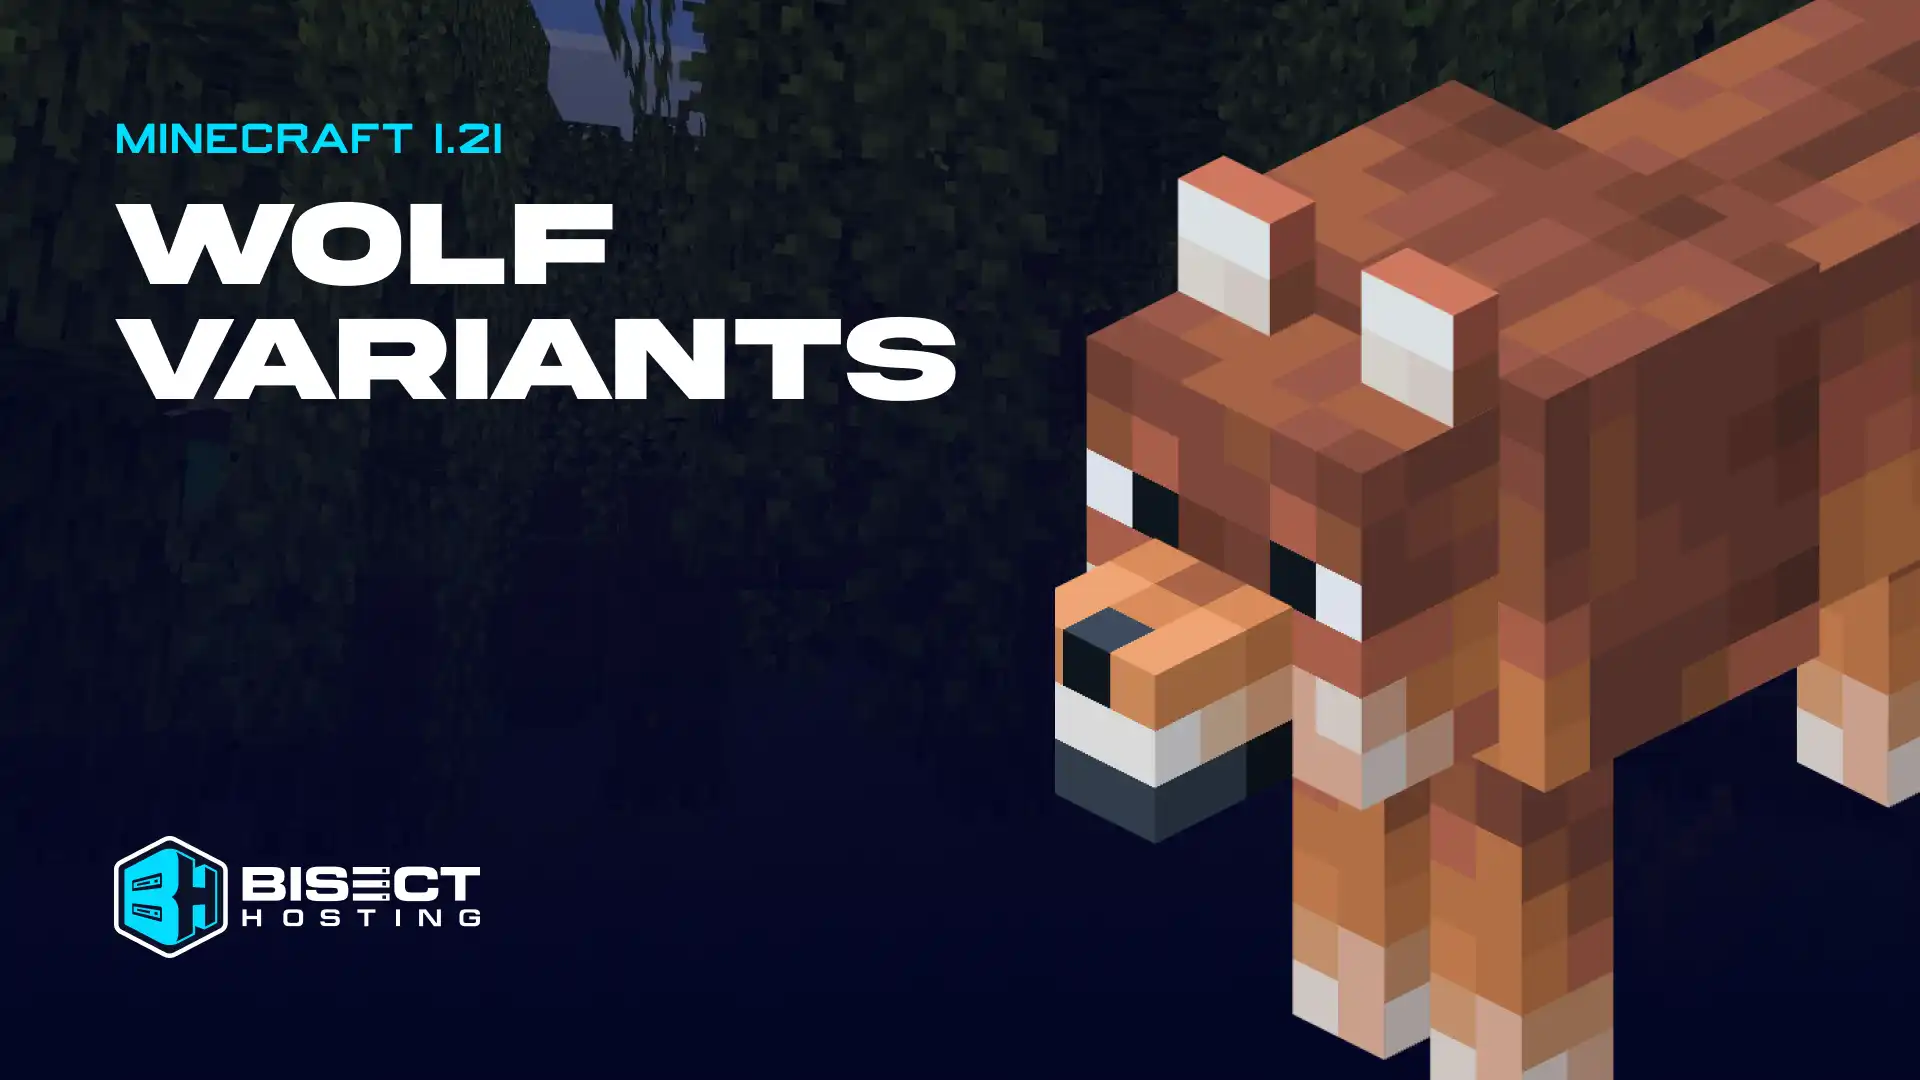 All Minecraft 1.21 Wolf Variants